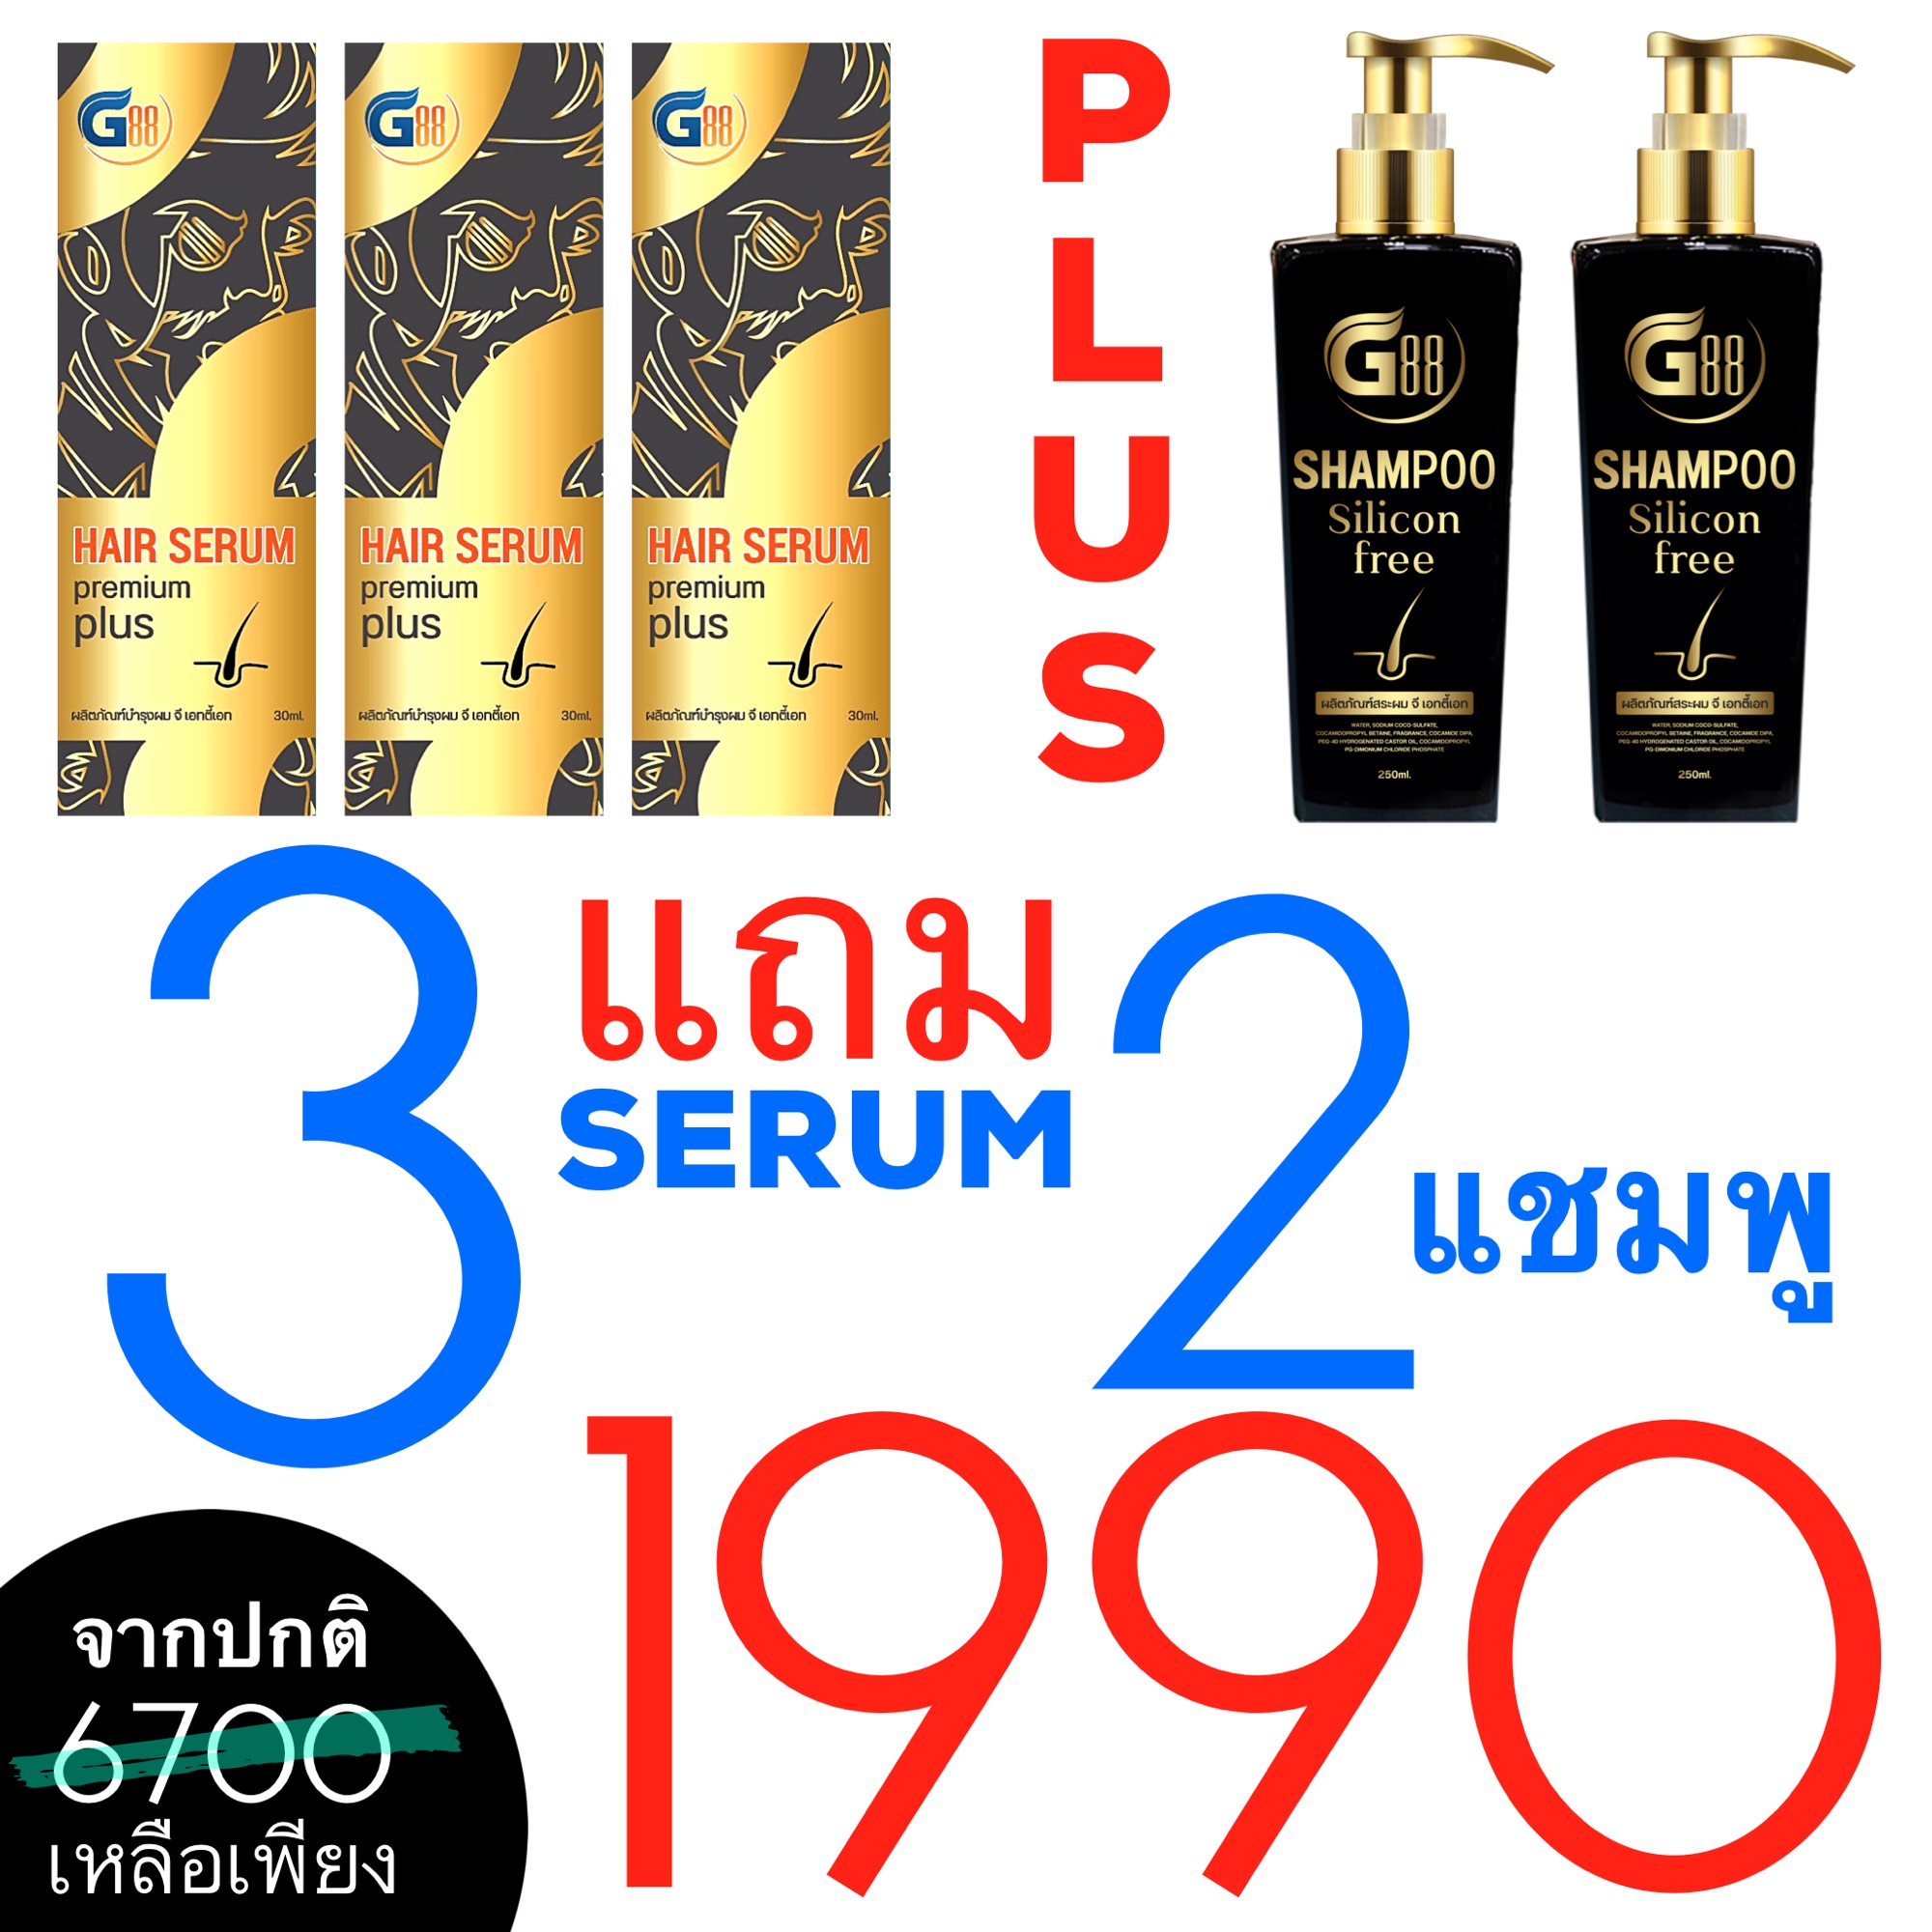 G88 Hair Serum Super Pack #ปลูกผม (ของแท้) #ผลิตภัณฑ์จากกอล์ฟเบญจพล